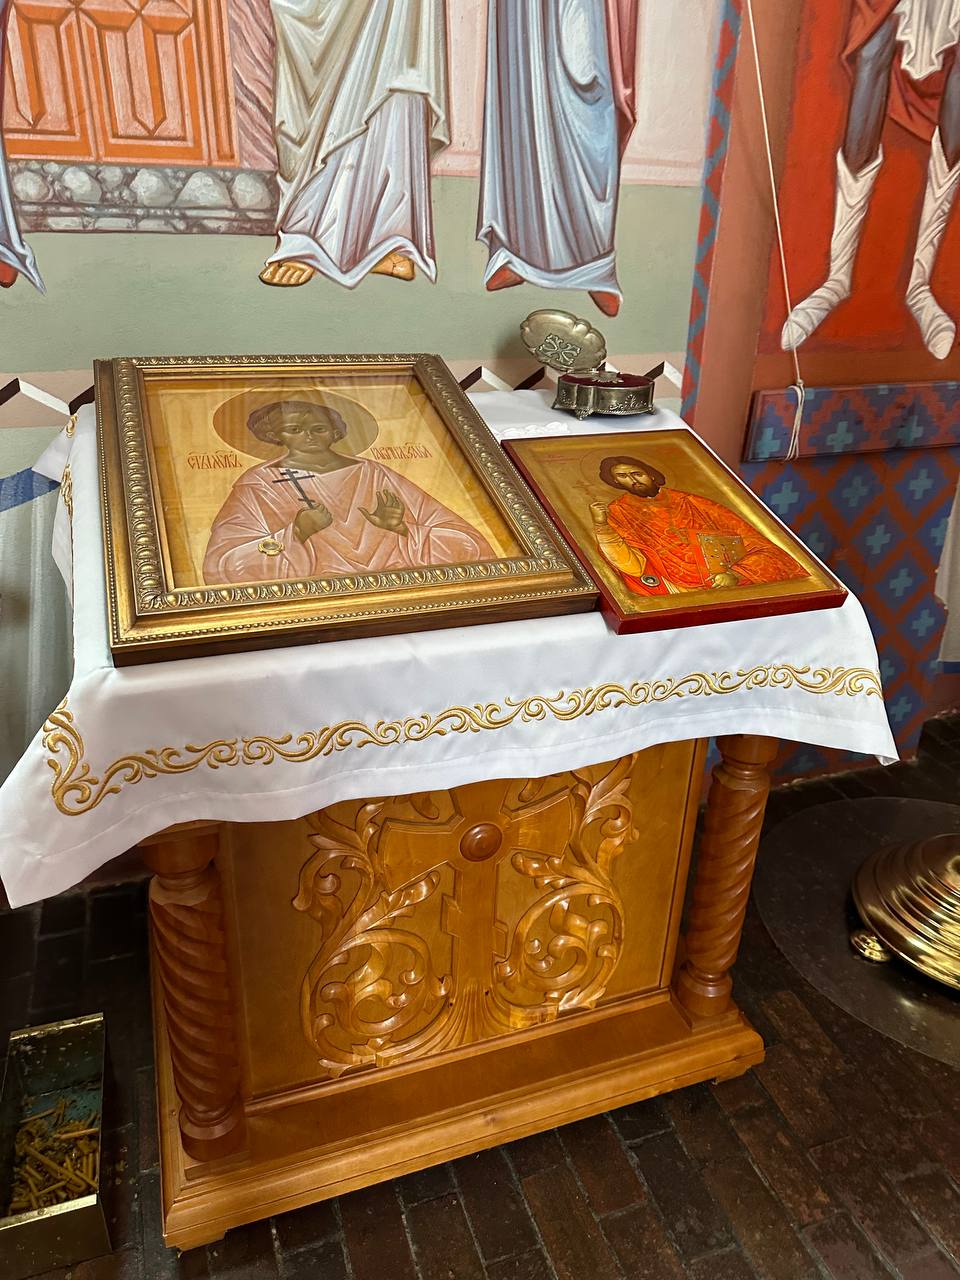 Польская православная церковь во Вроцлаве: эксклюзивный фоторепортаж изнутри - фото 9